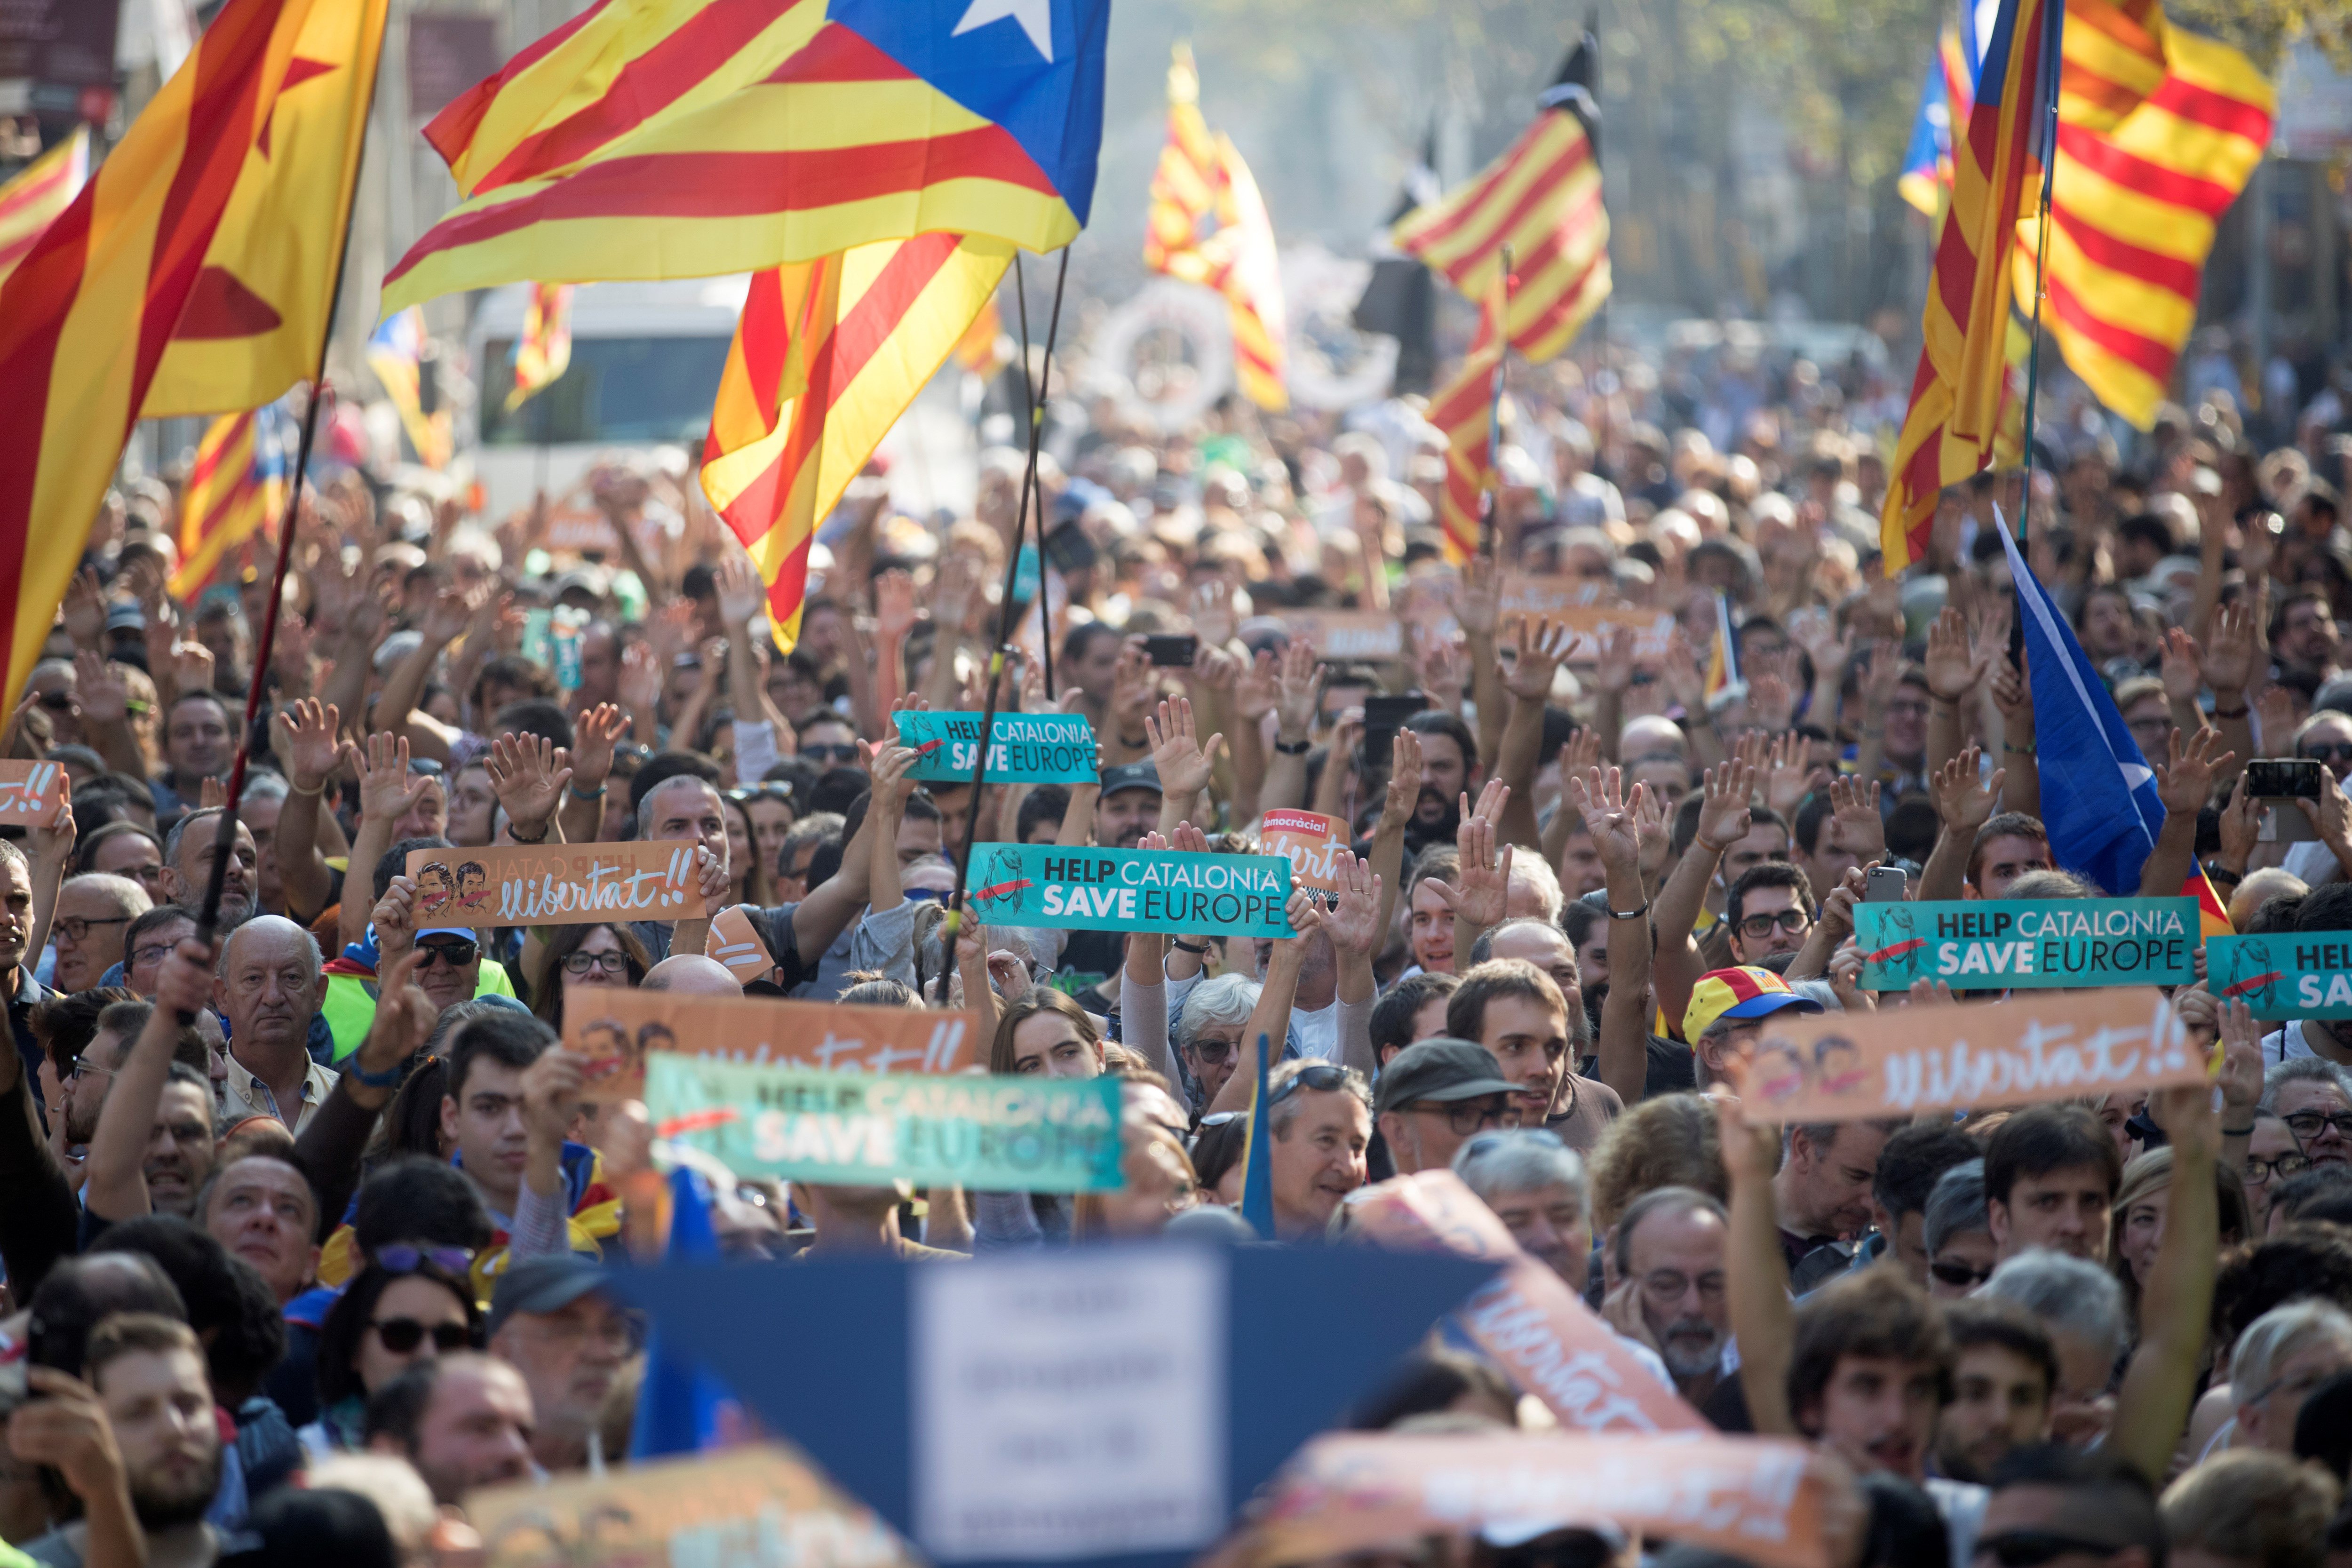 Днес регионалният парламент на Каталуния одобри обявяването на независимост от Испания с тайно гласуване. „Установяваме Каталунската република, независима и суверенна държава под върховенството на закона”, гласи текста на гласуваната резолюция. Испания веднага отвърна с прилагането на член 155 от Конституцията, с който се отнема автономията на областта. Междувременно хиляди хора по улиците на Барселона празнуваха акта за независимост на Каталуния.